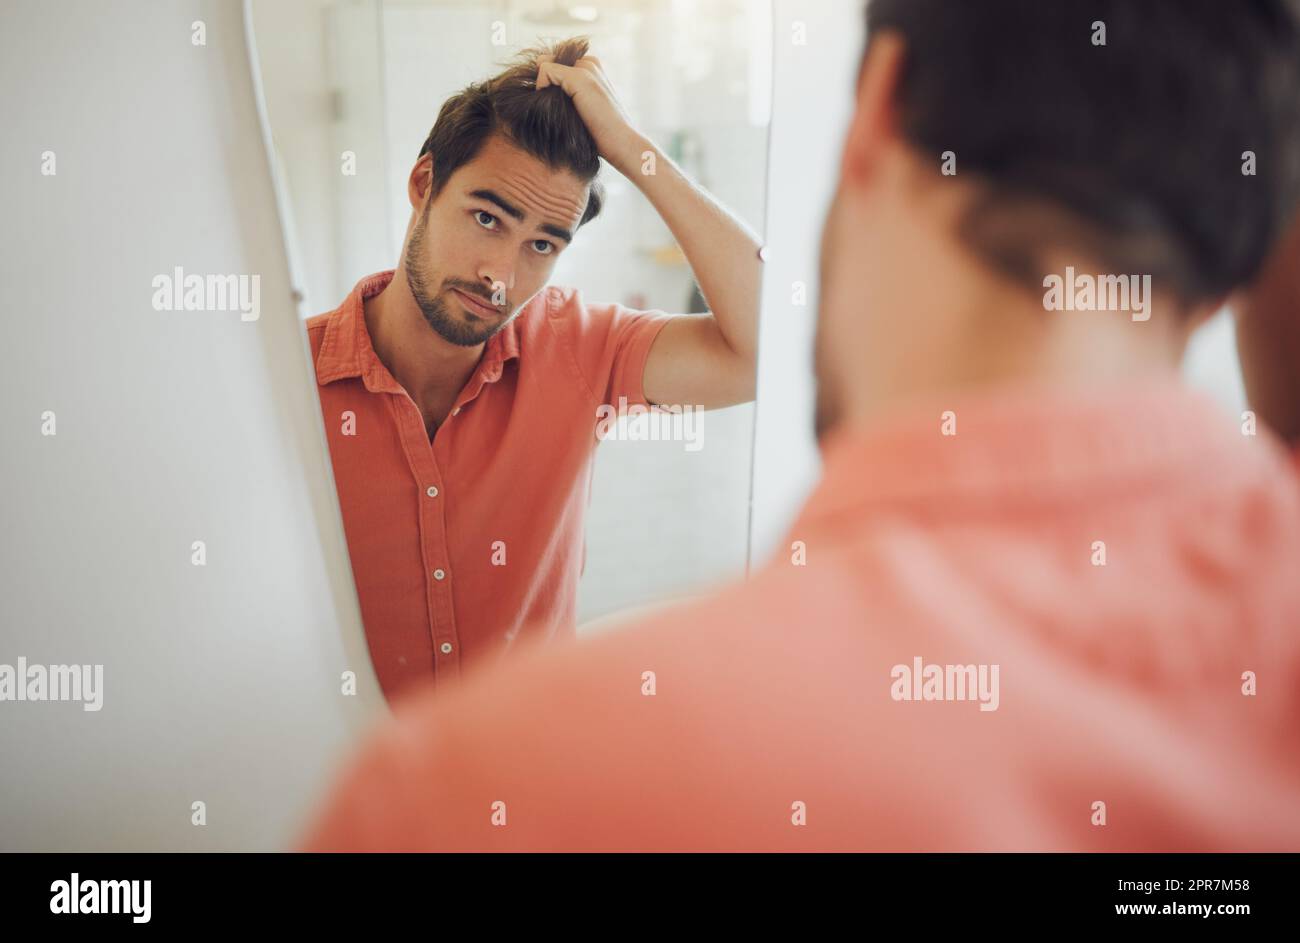 Ein hübscher junger weißer Mann, der seine Haare berührt und in den Badezimmerspiegel schaut. Ein Mann zieht sich die Haare und will sich die Haare schneiden lassen. Besorgter Mann, der sich Sorgen um Schuppen, Haarausfall oder Haarausfall machte Stockfoto